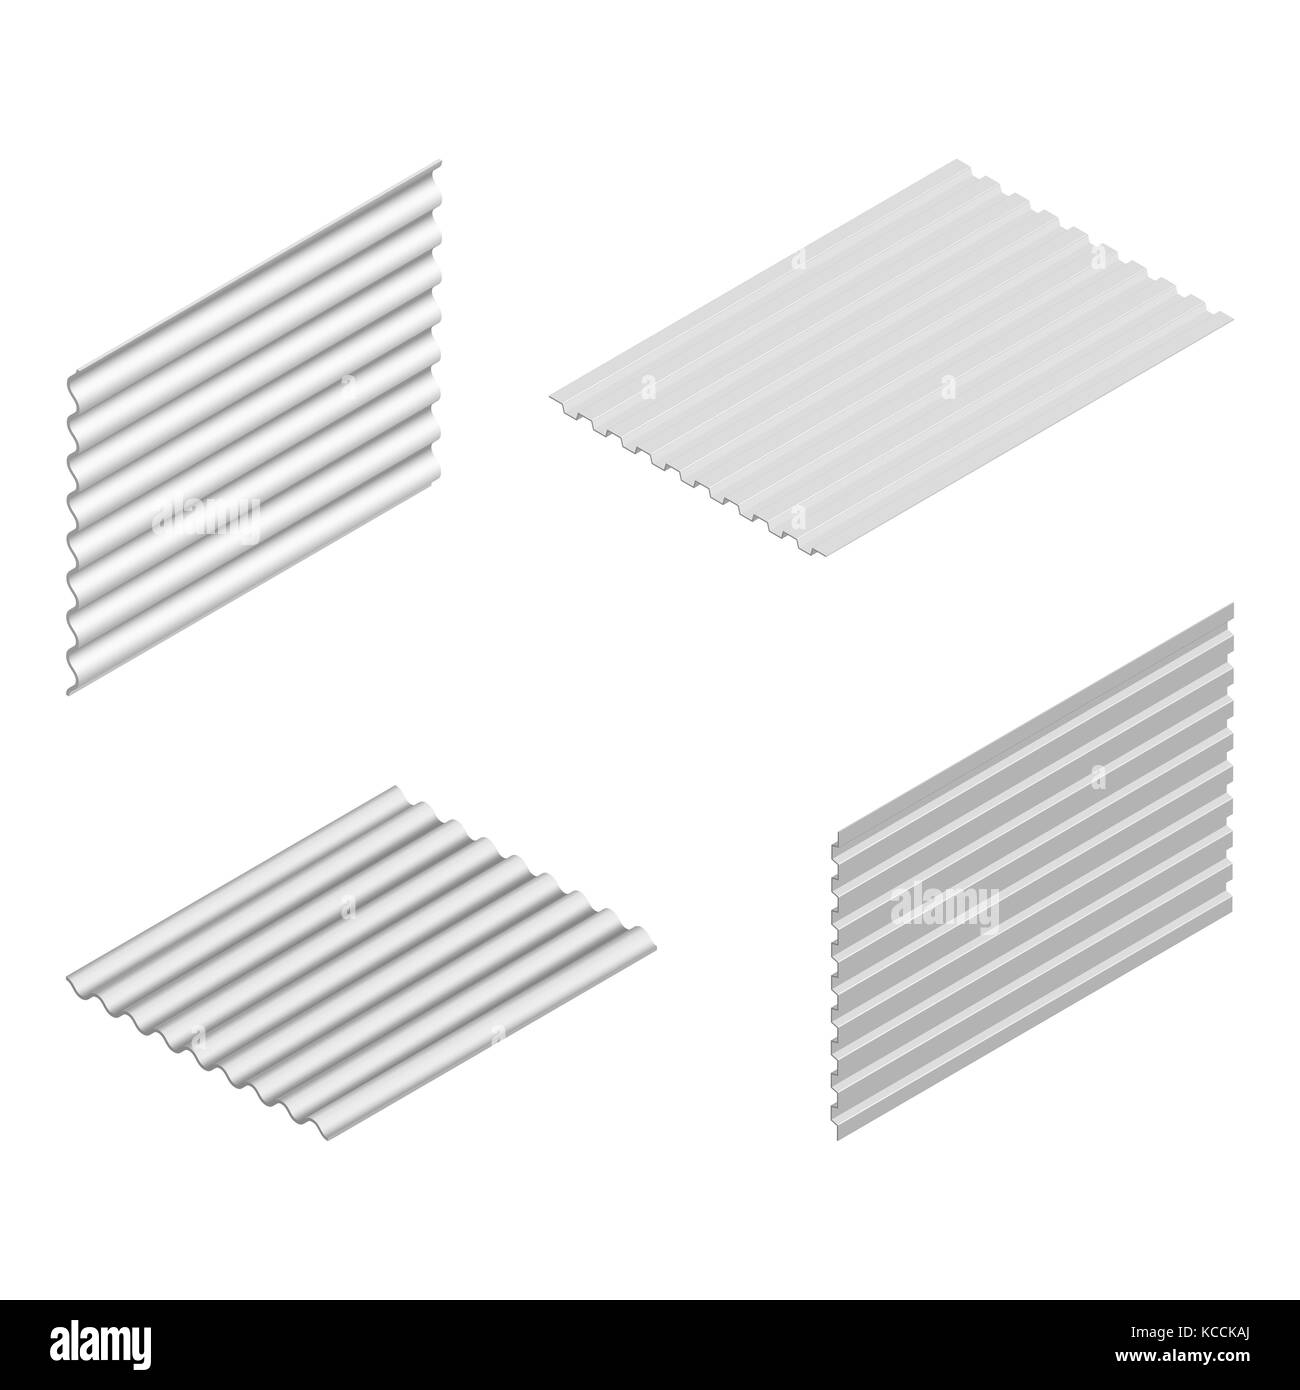 Blatt Welle Schiefer und Stahl Profil auf weißem Hintergrund, vertikale und horizontale Anordnung. Element der Gestaltung von Baustoffen. Stock Vektor